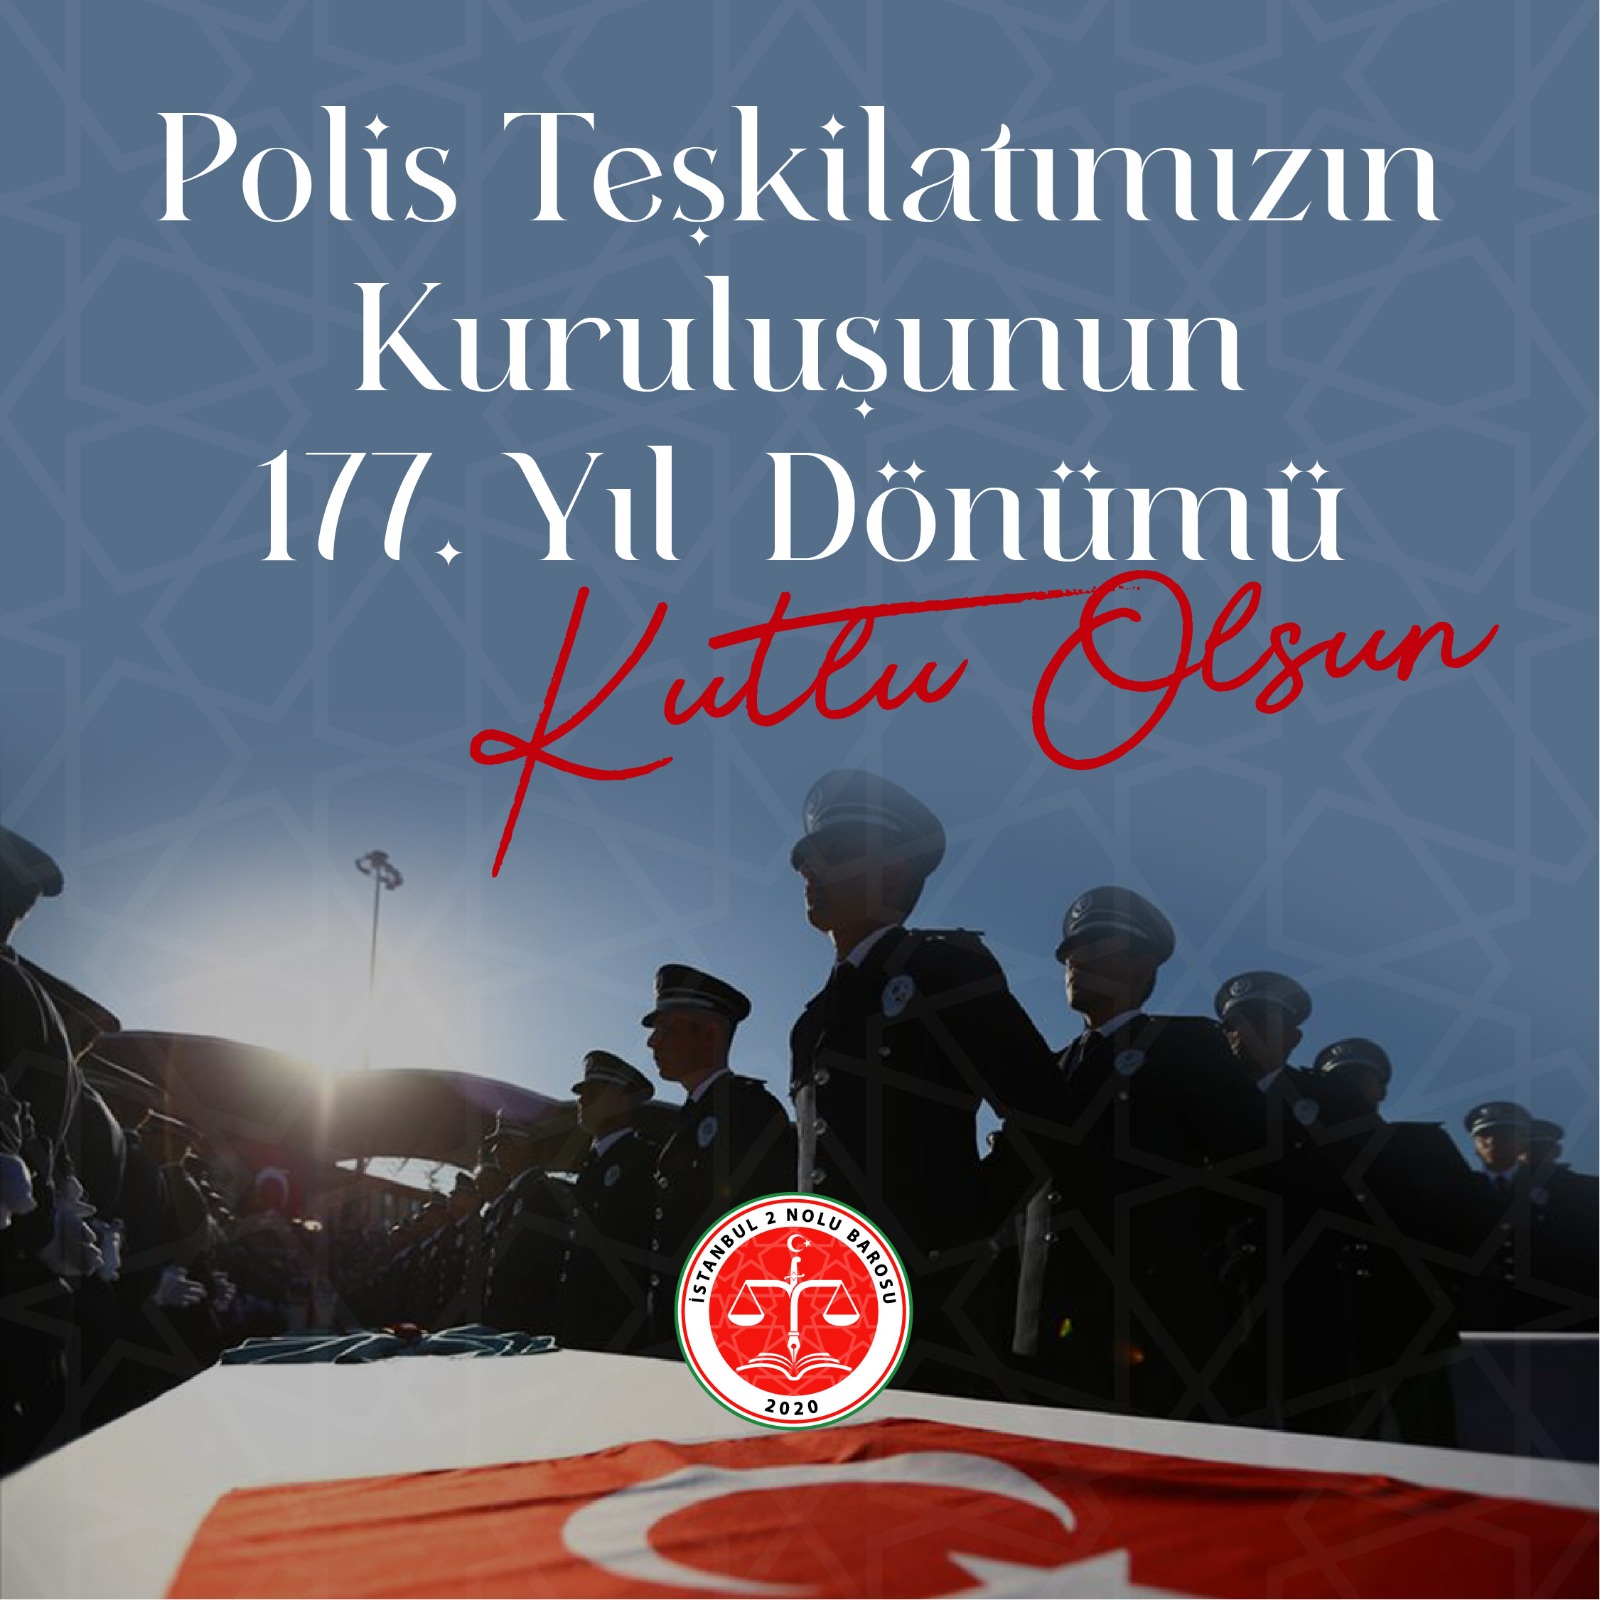 POLİS TEŞKİLATIMIZIN KURULUŞUNUN 177. YIL DÖNÜMÜ KUTLU OLSUN!